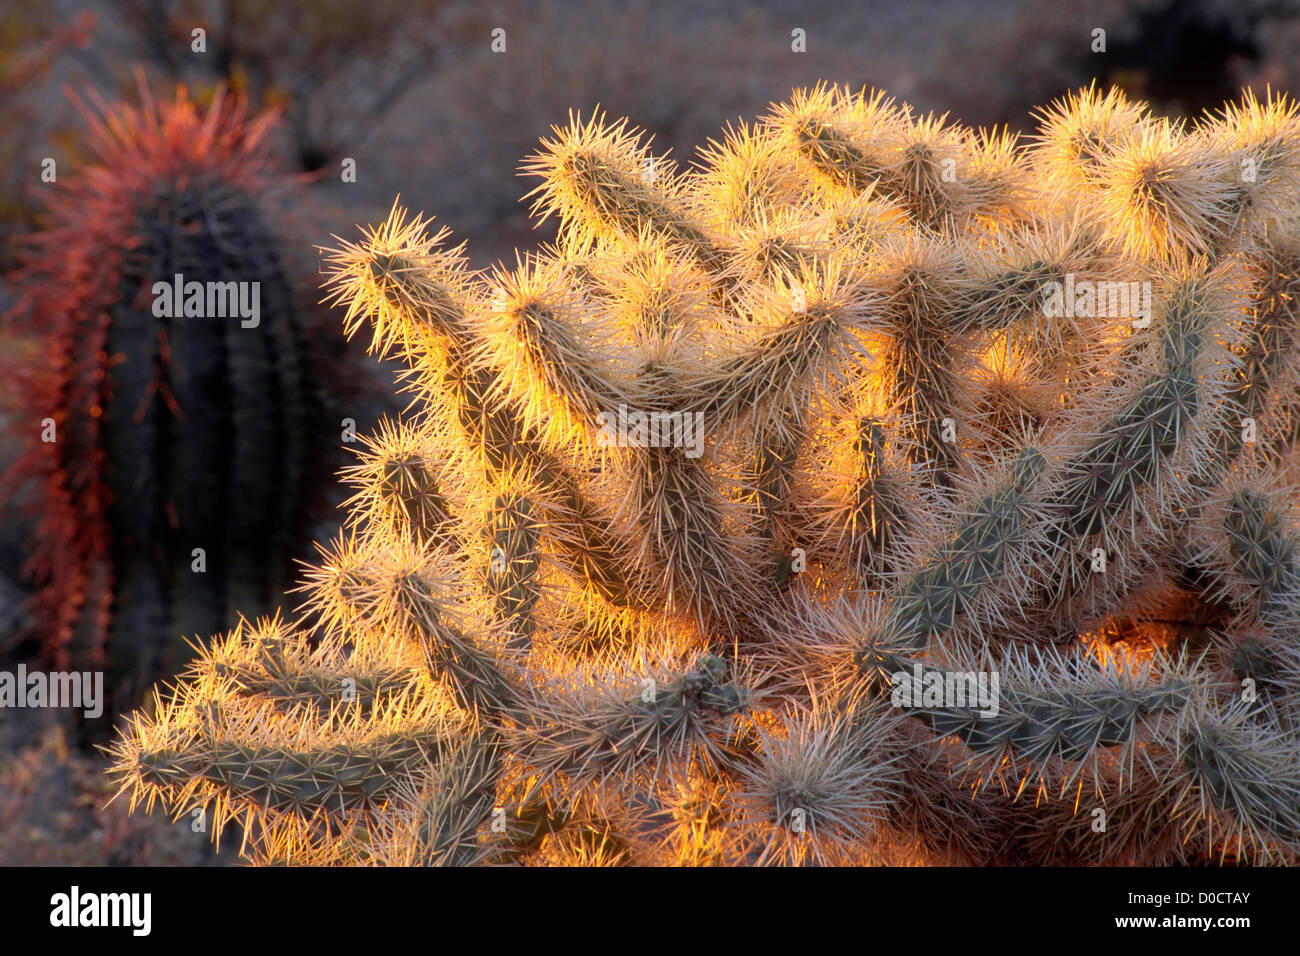 Le soleil qui illumine les épines opaque d'un cactus Cholla Banque D'Images